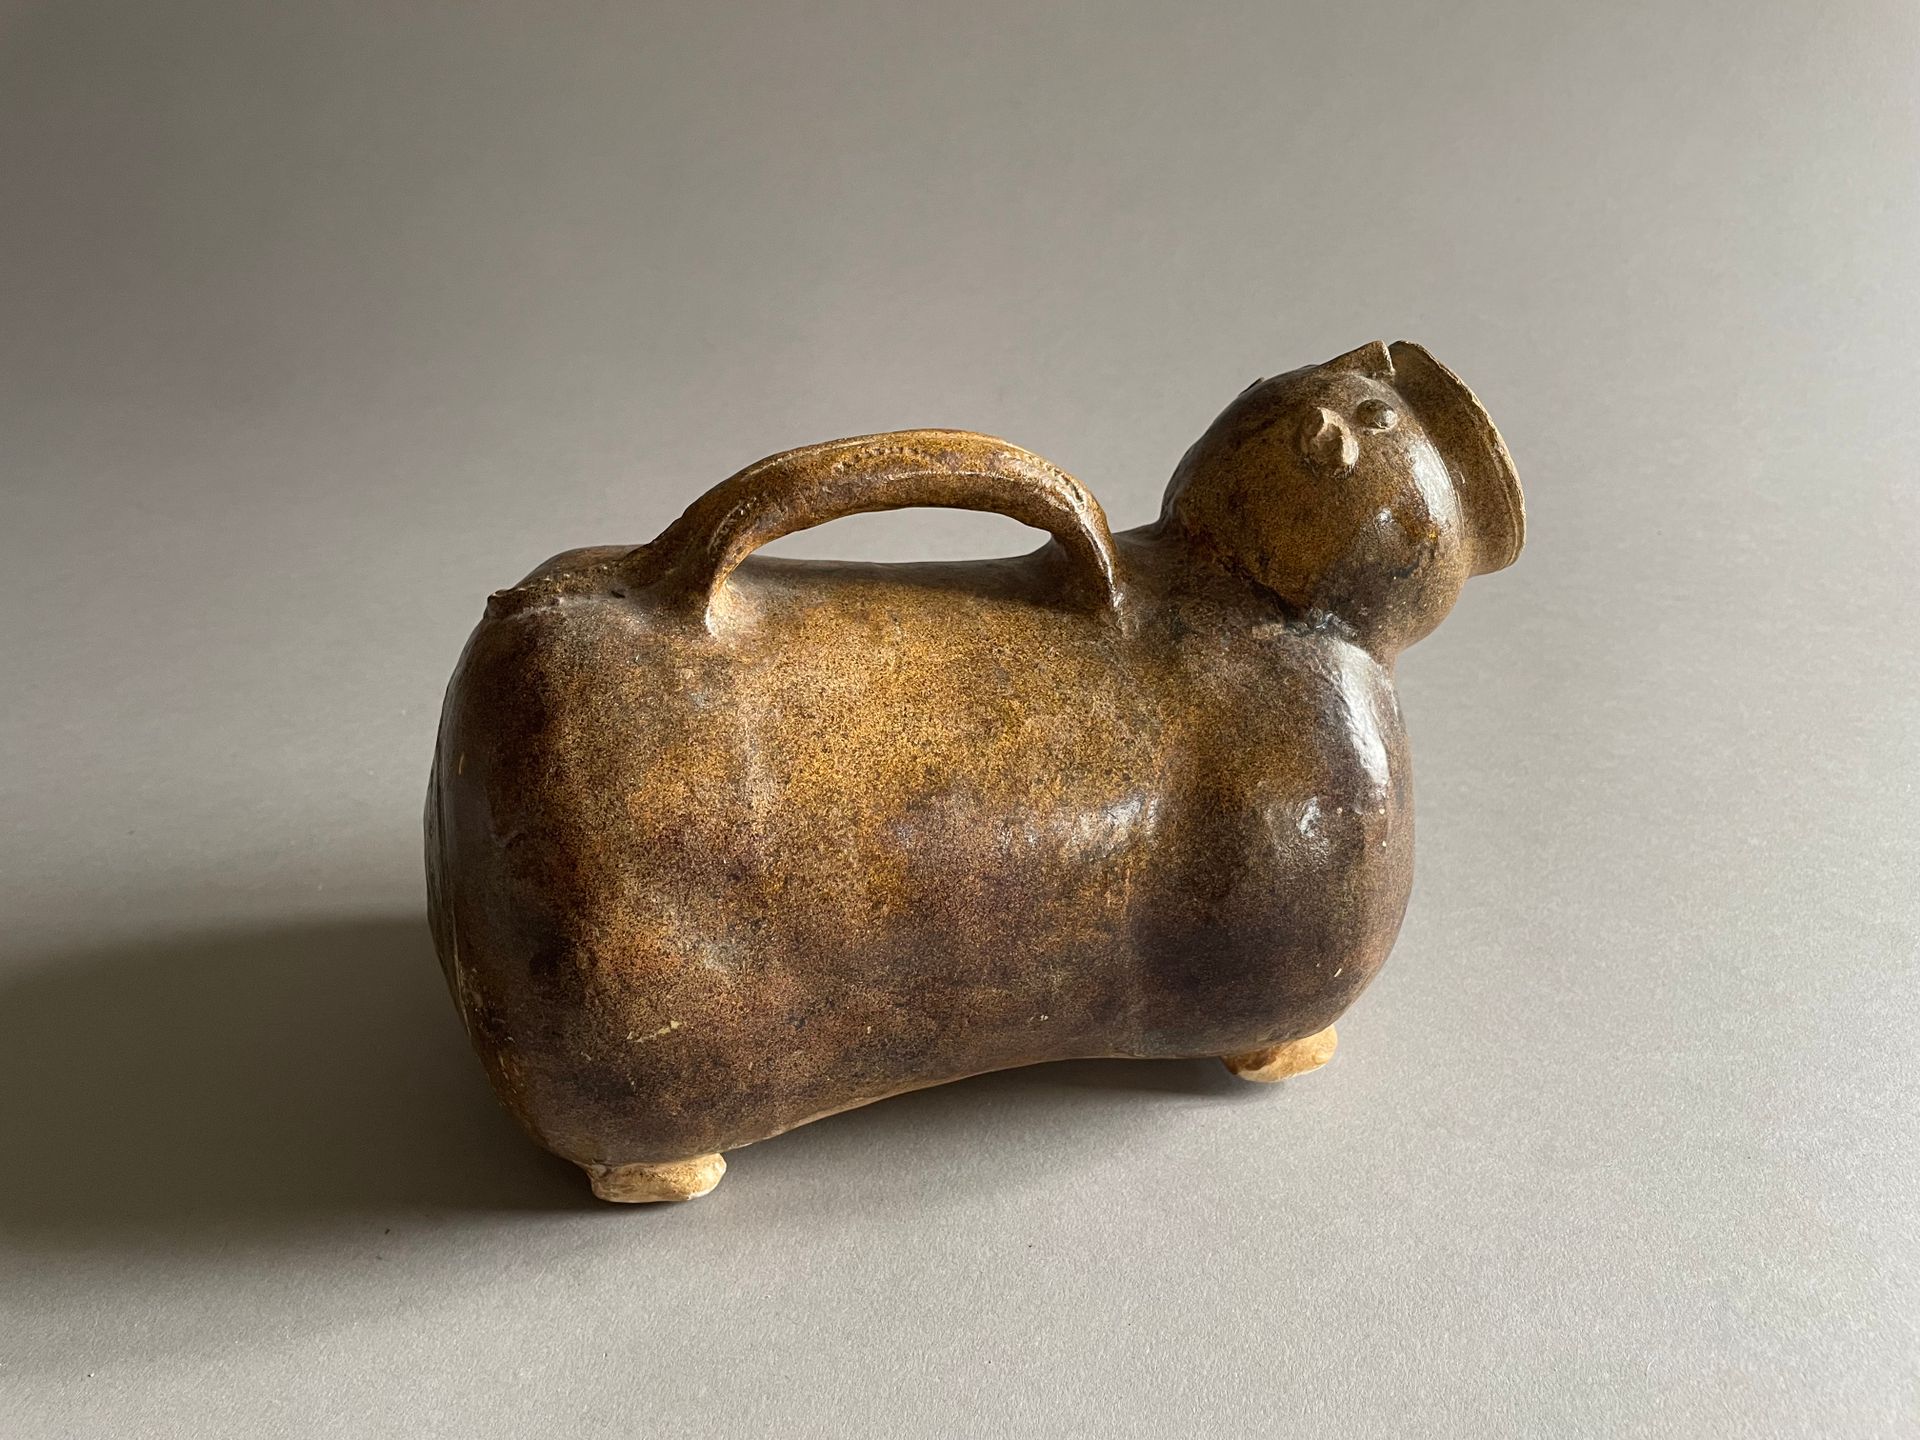 Null 动物造型褐釉陶罐
十九世纪
长 23 厘米
(有一些缺口）